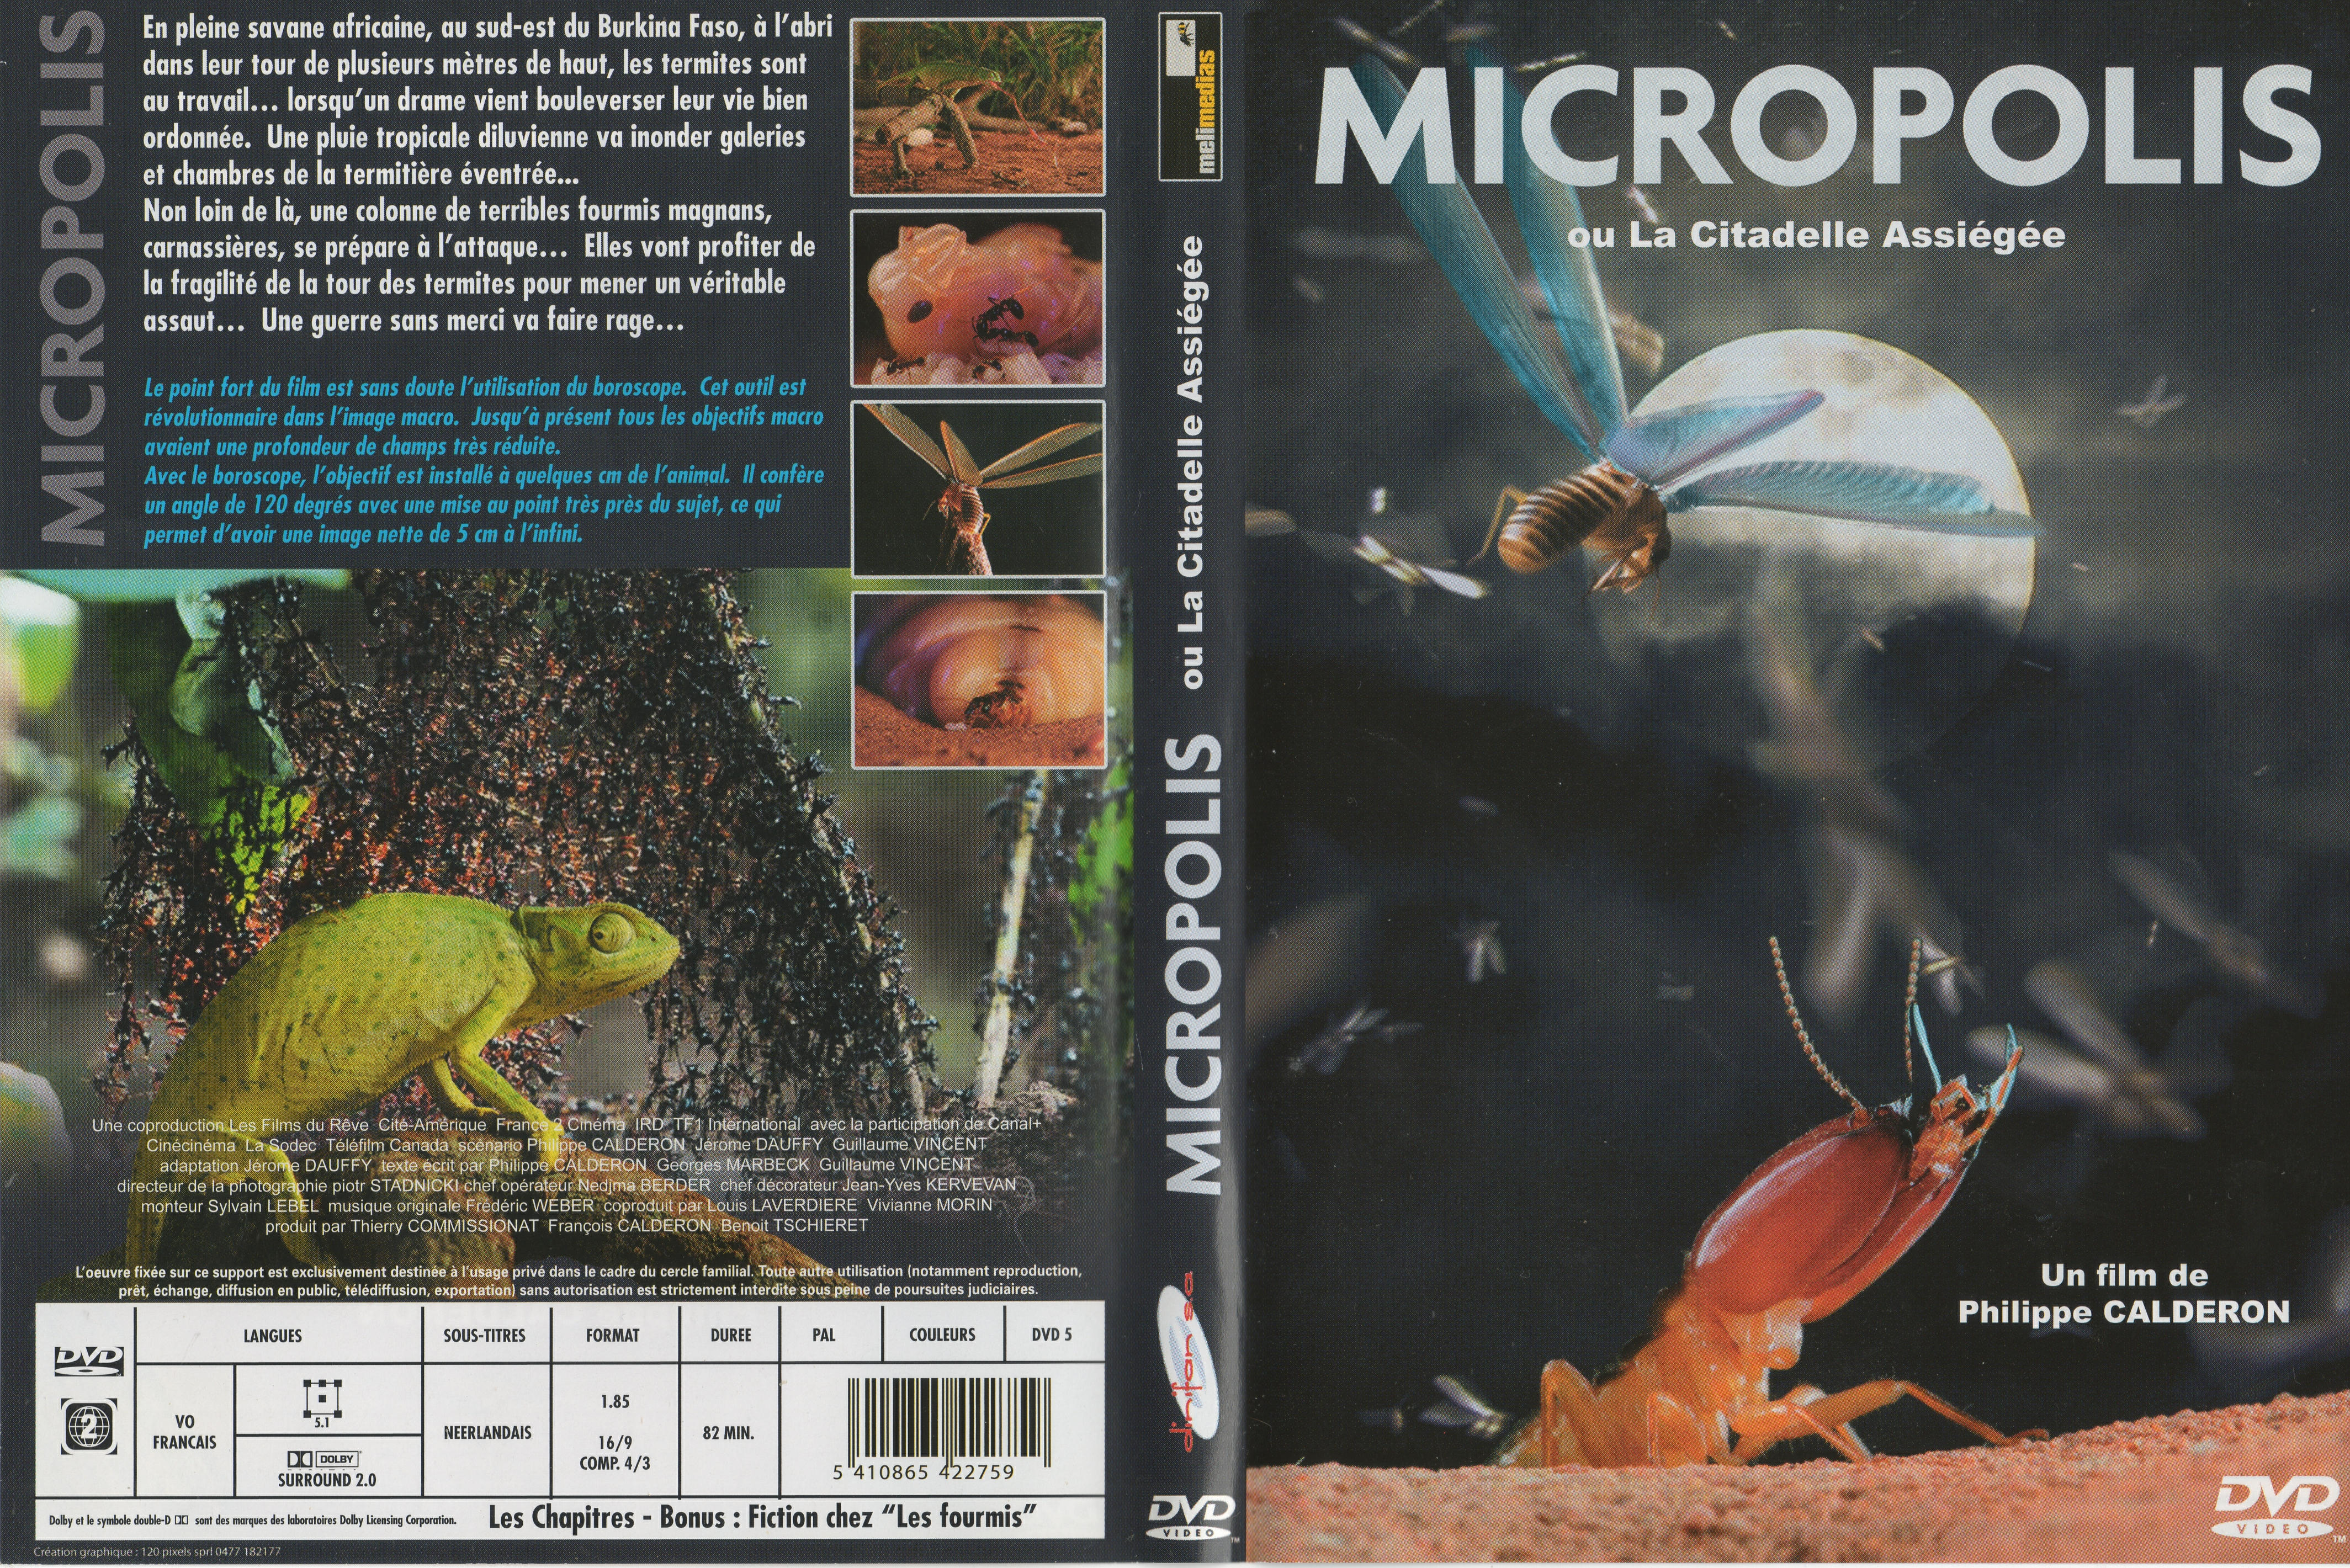 Jaquette DVD Micropolis ou la citadelle assige v2